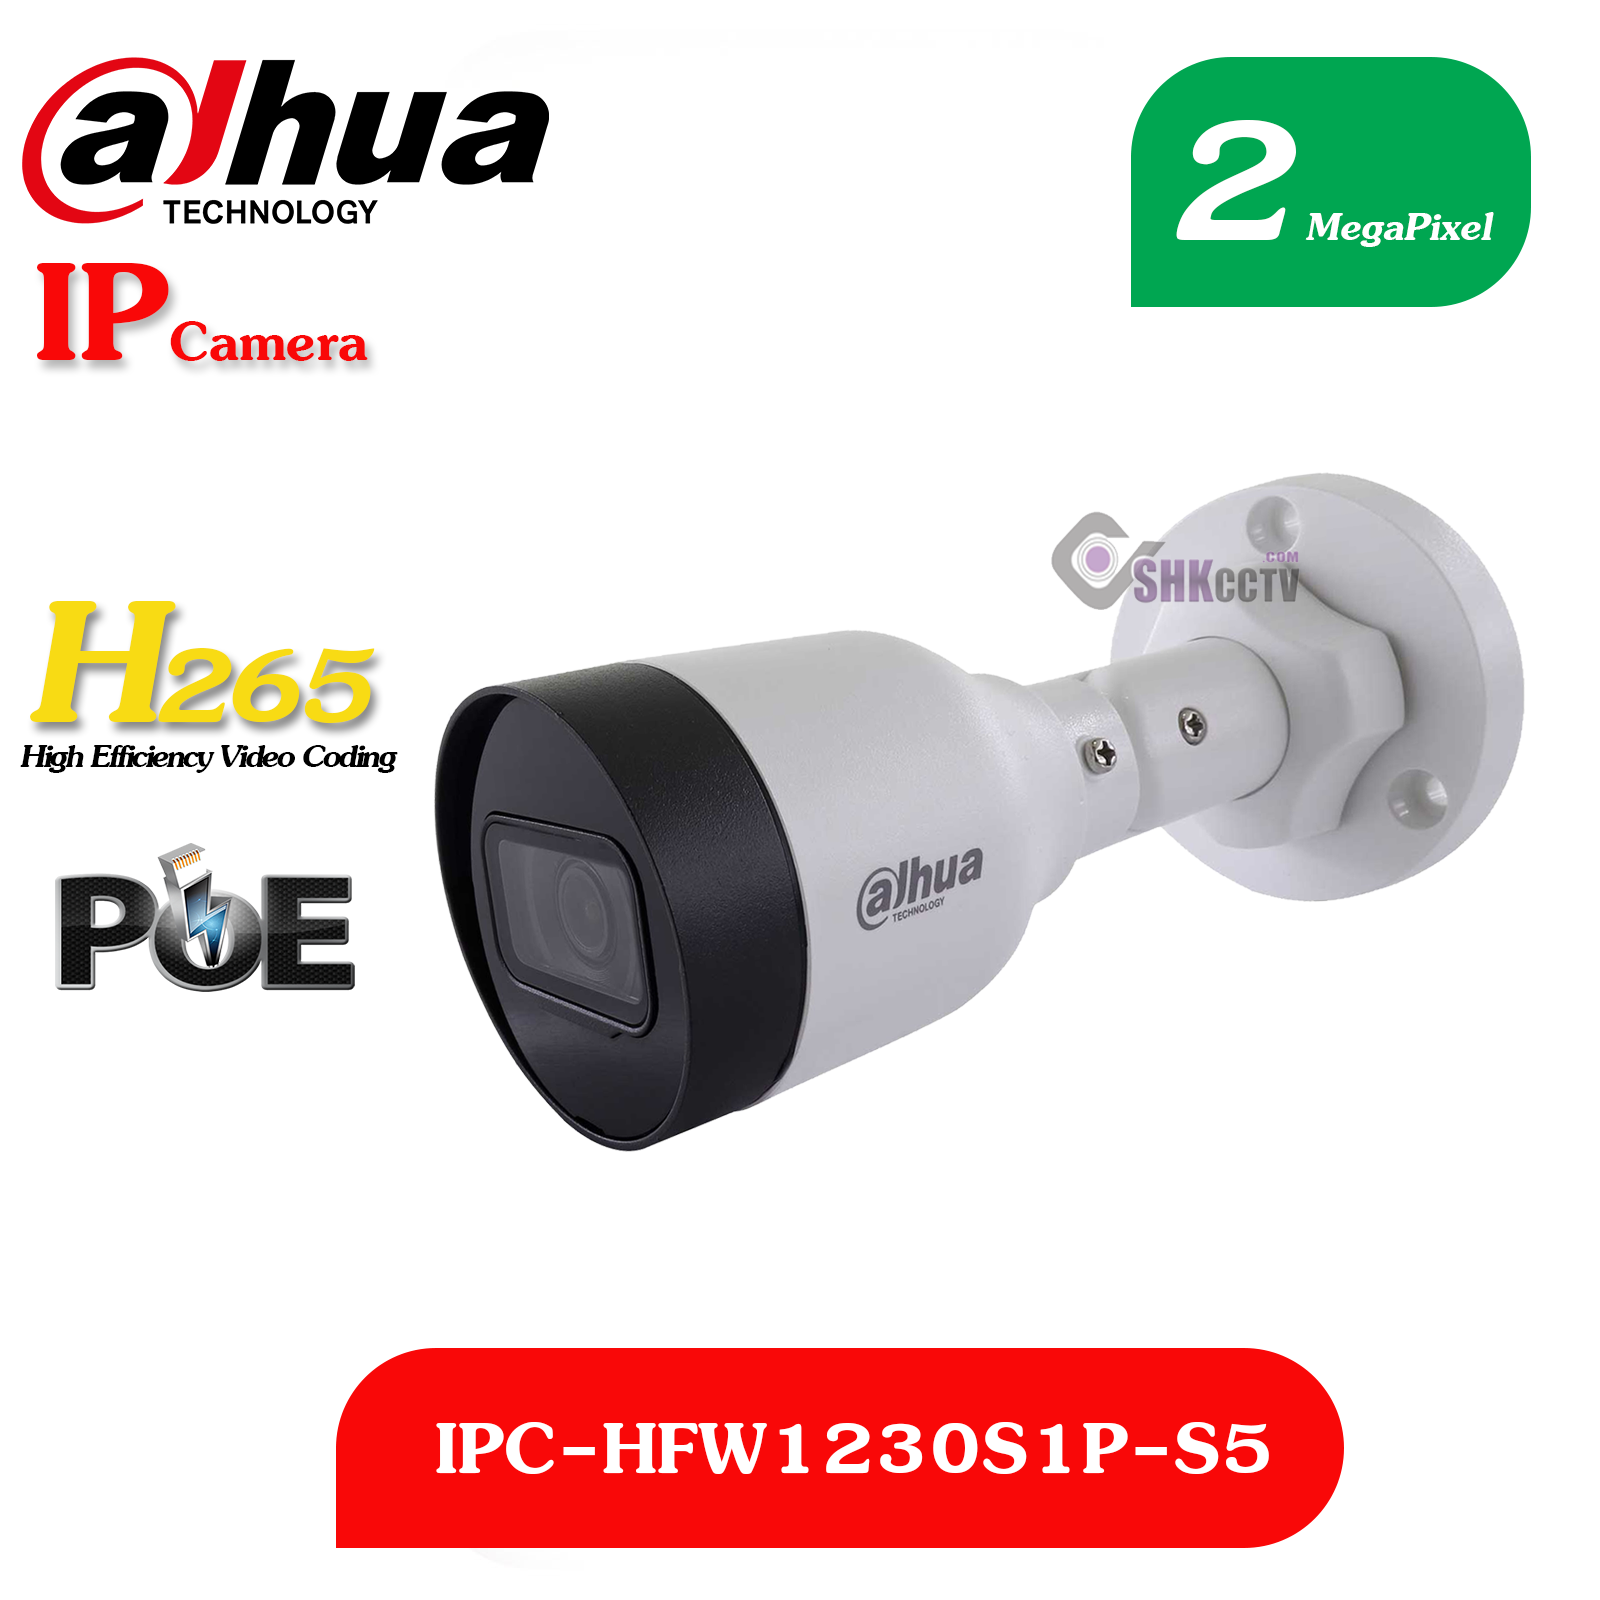 IPC-HFW1230S1P-S5